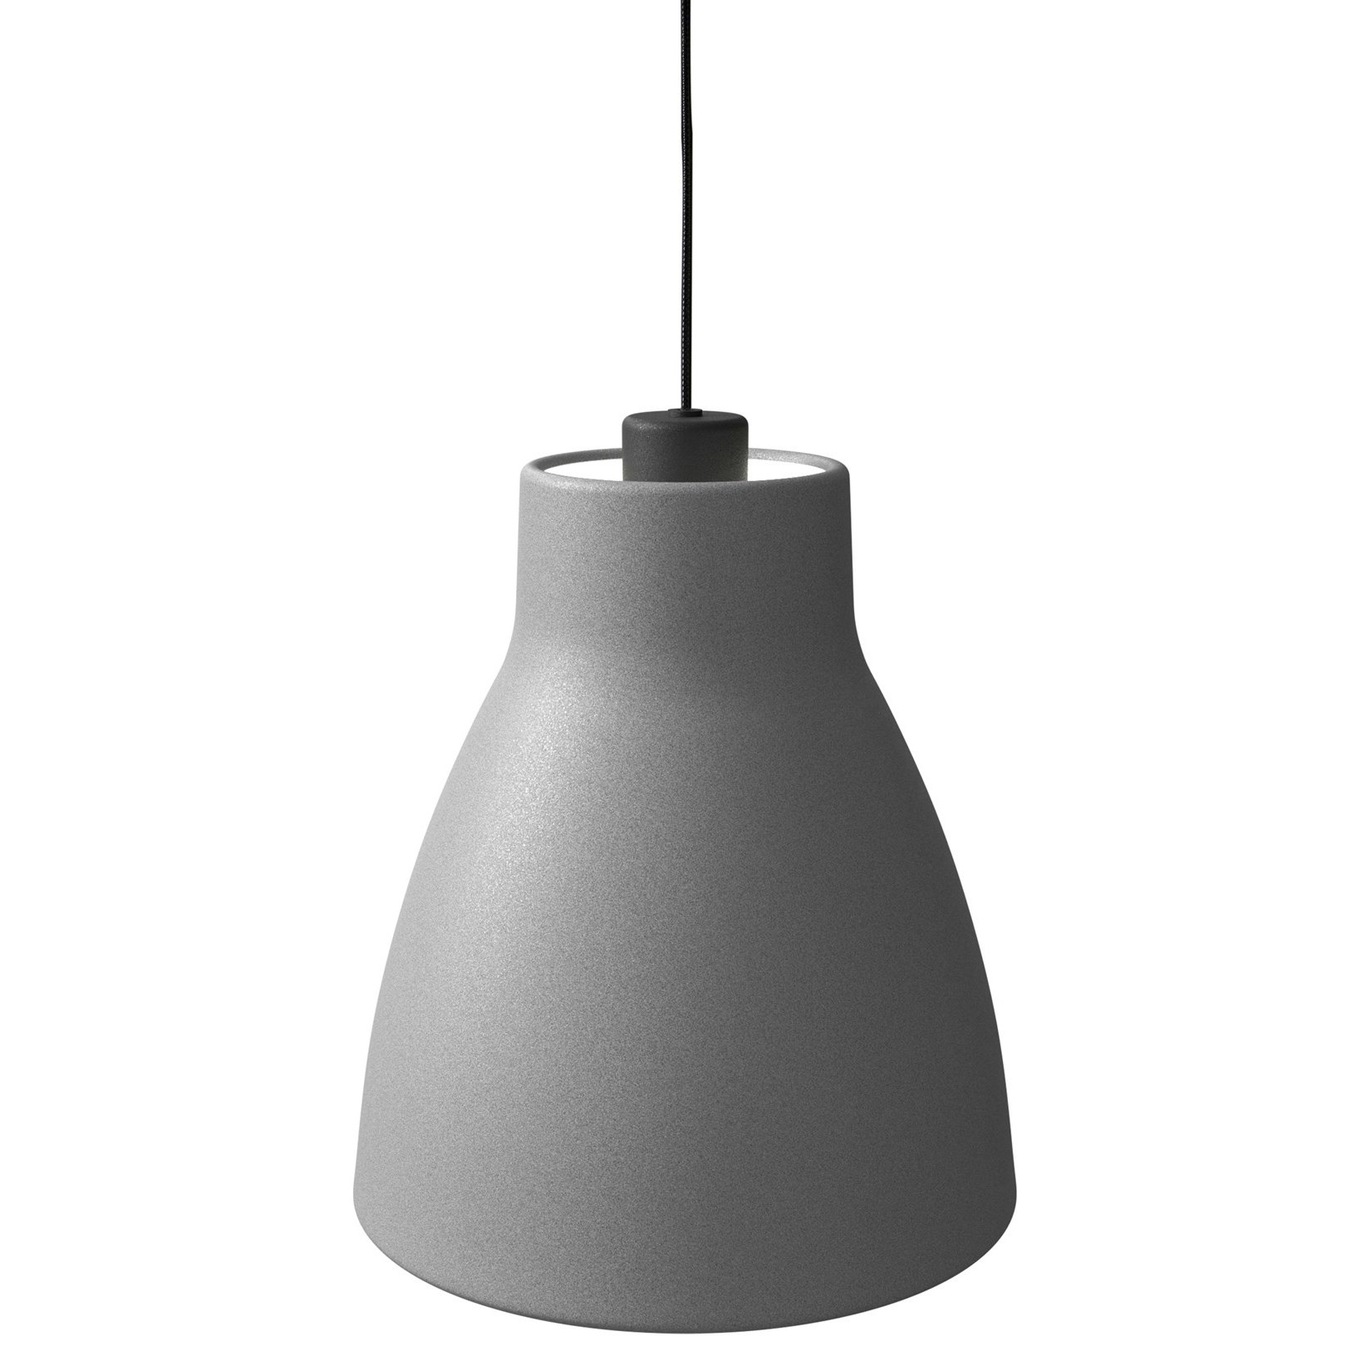 Gong Hanglamp 250 mm, Beton / Zwart